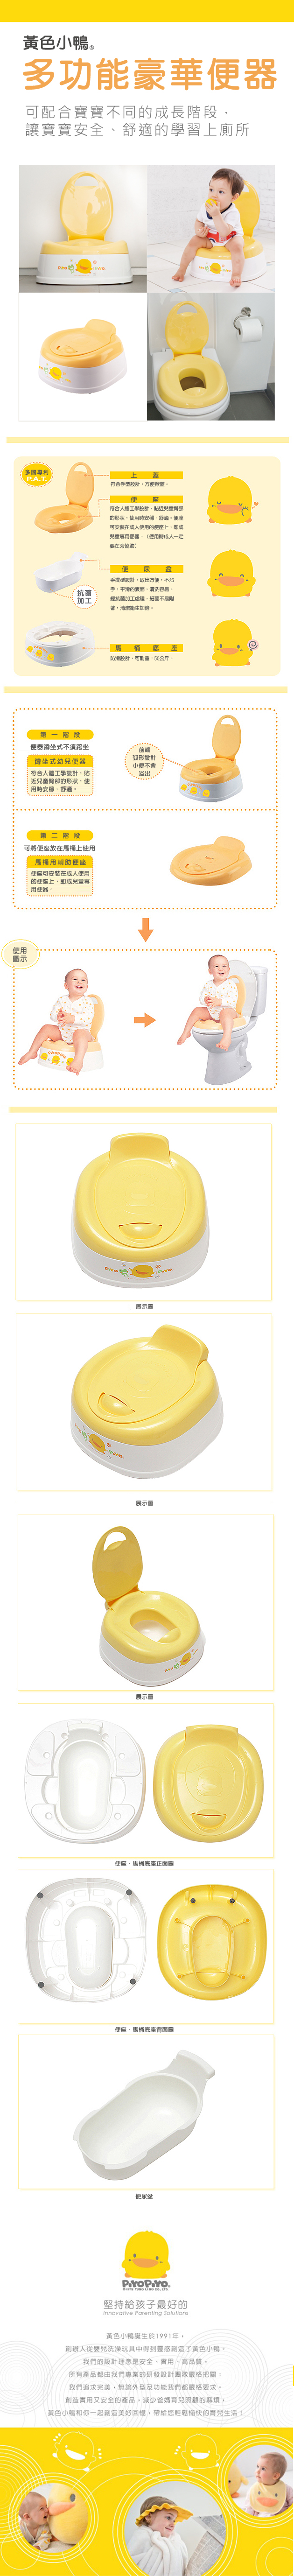 黃色小鴨-多功能豪華幼兒便器(GT-83332)